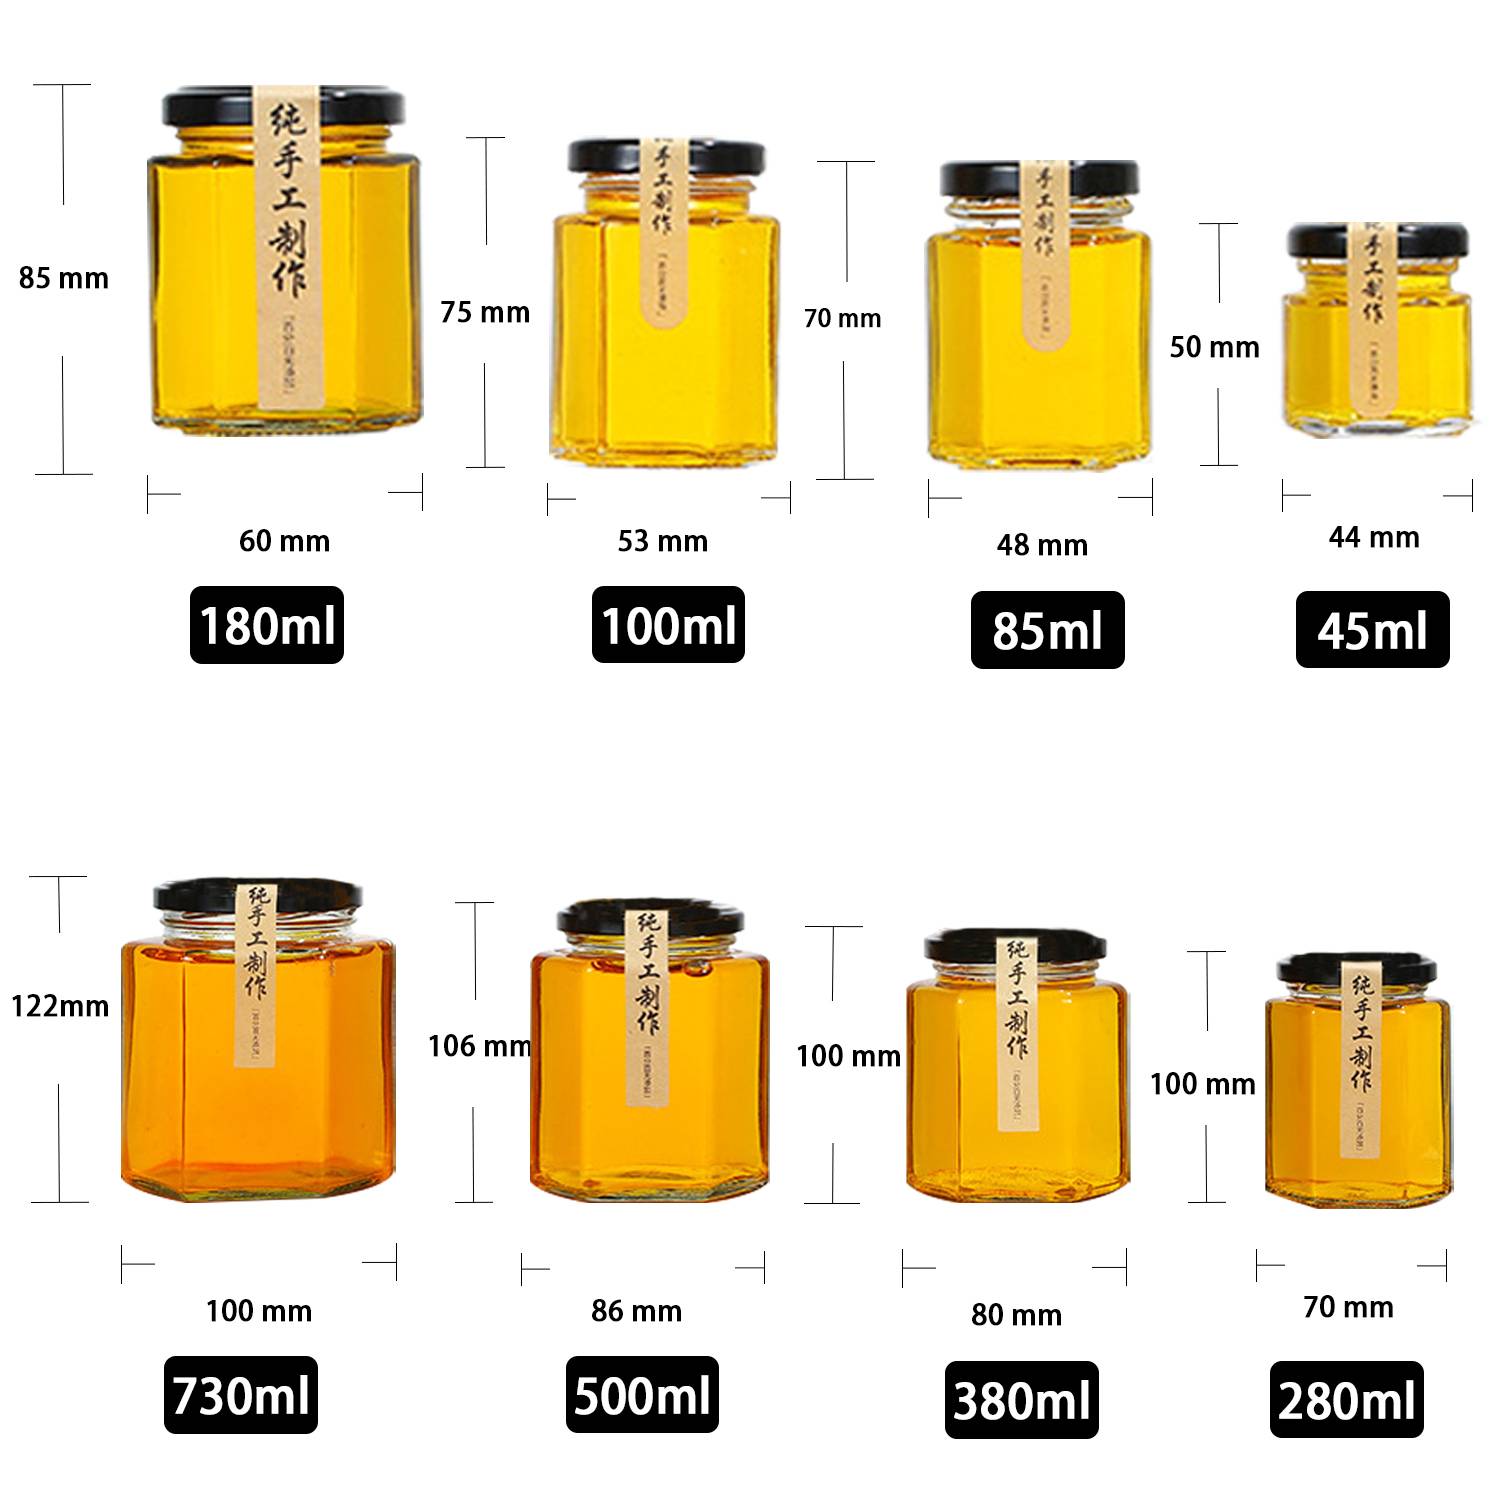 6 oz honey jars